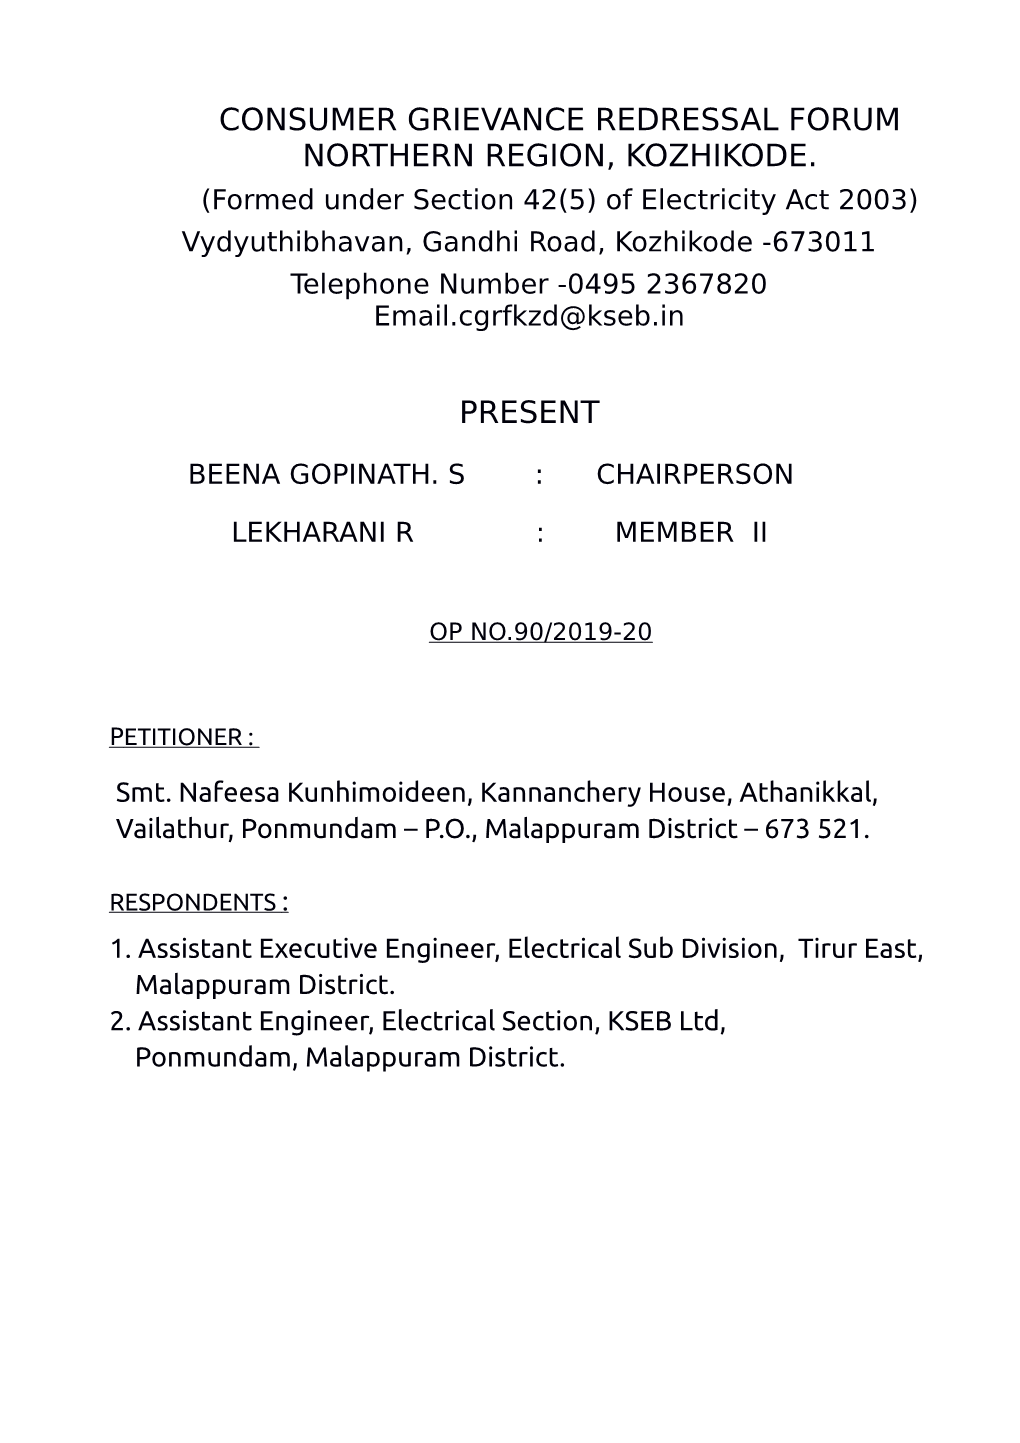 Consumer Grievance Redressal Forum Northern Region, Kozhikode. Present